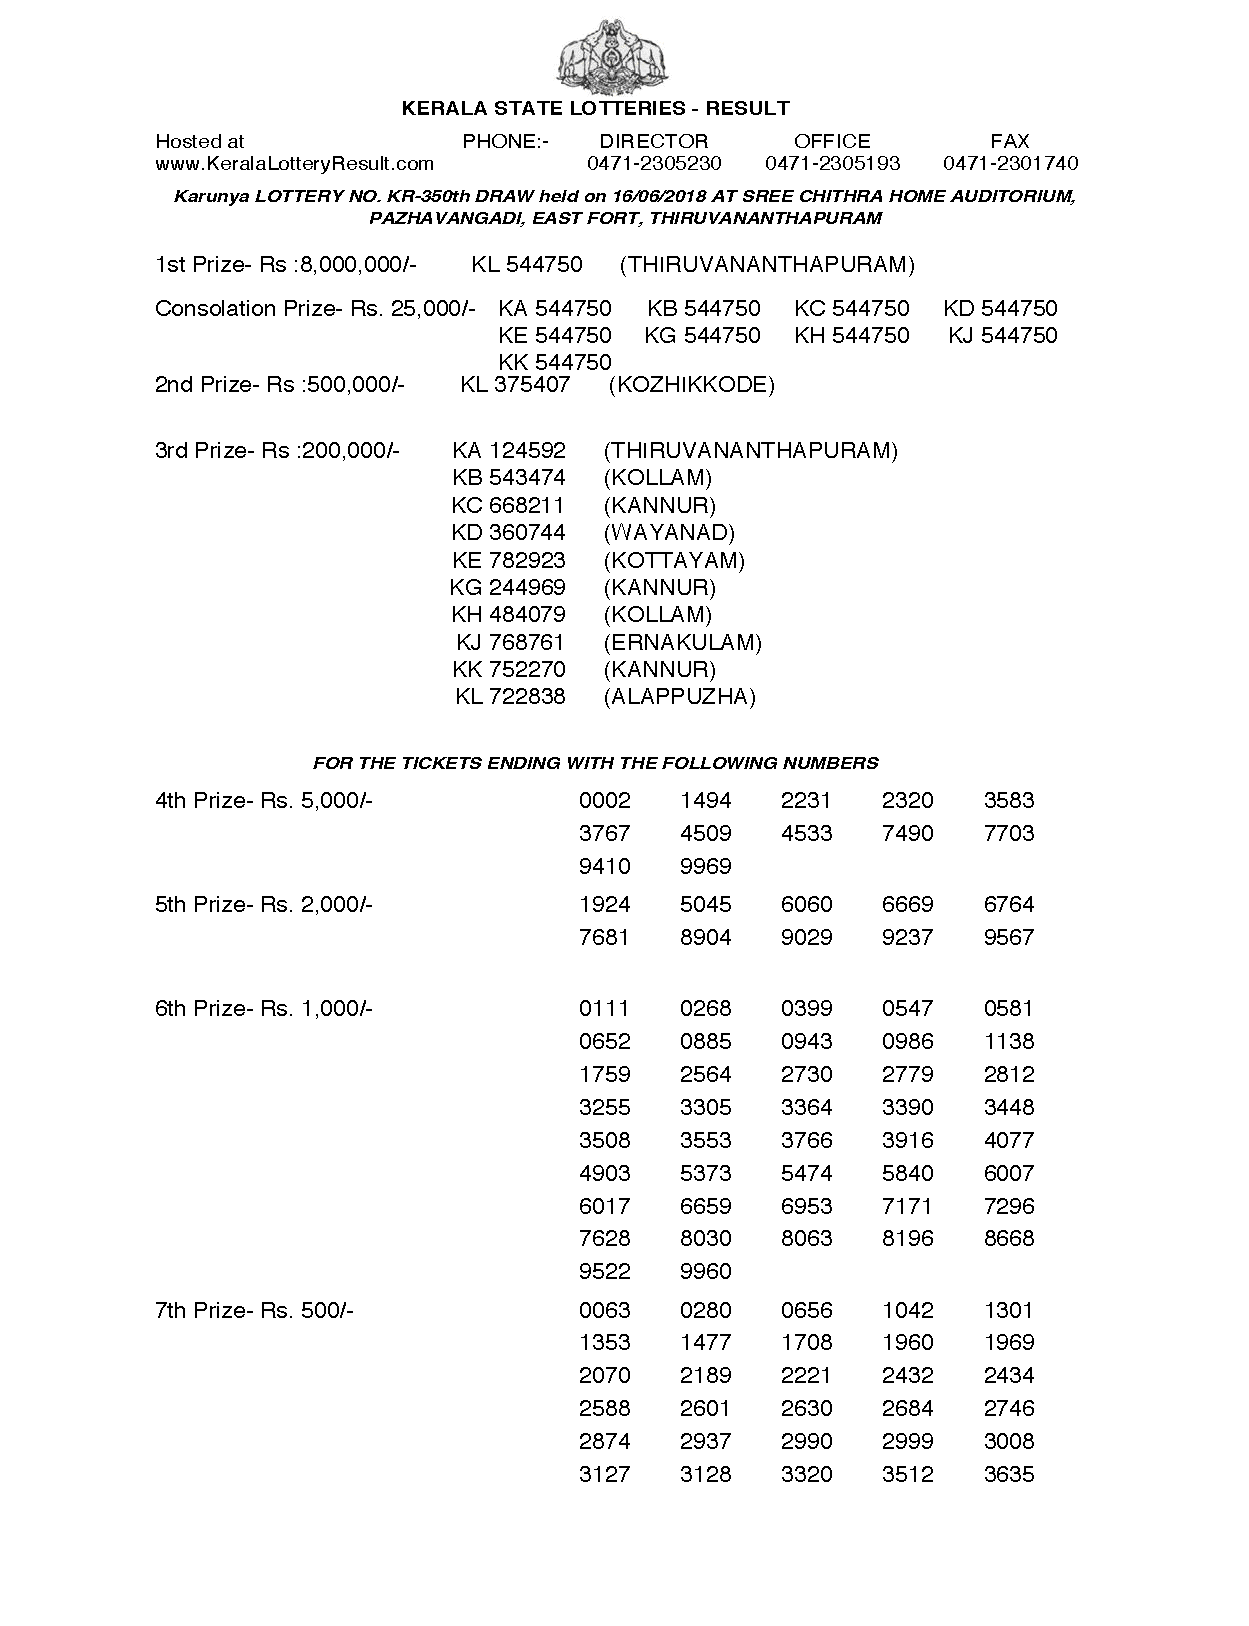 Karunya KR350 Kerala Lottery Results Screenshot: Page 1